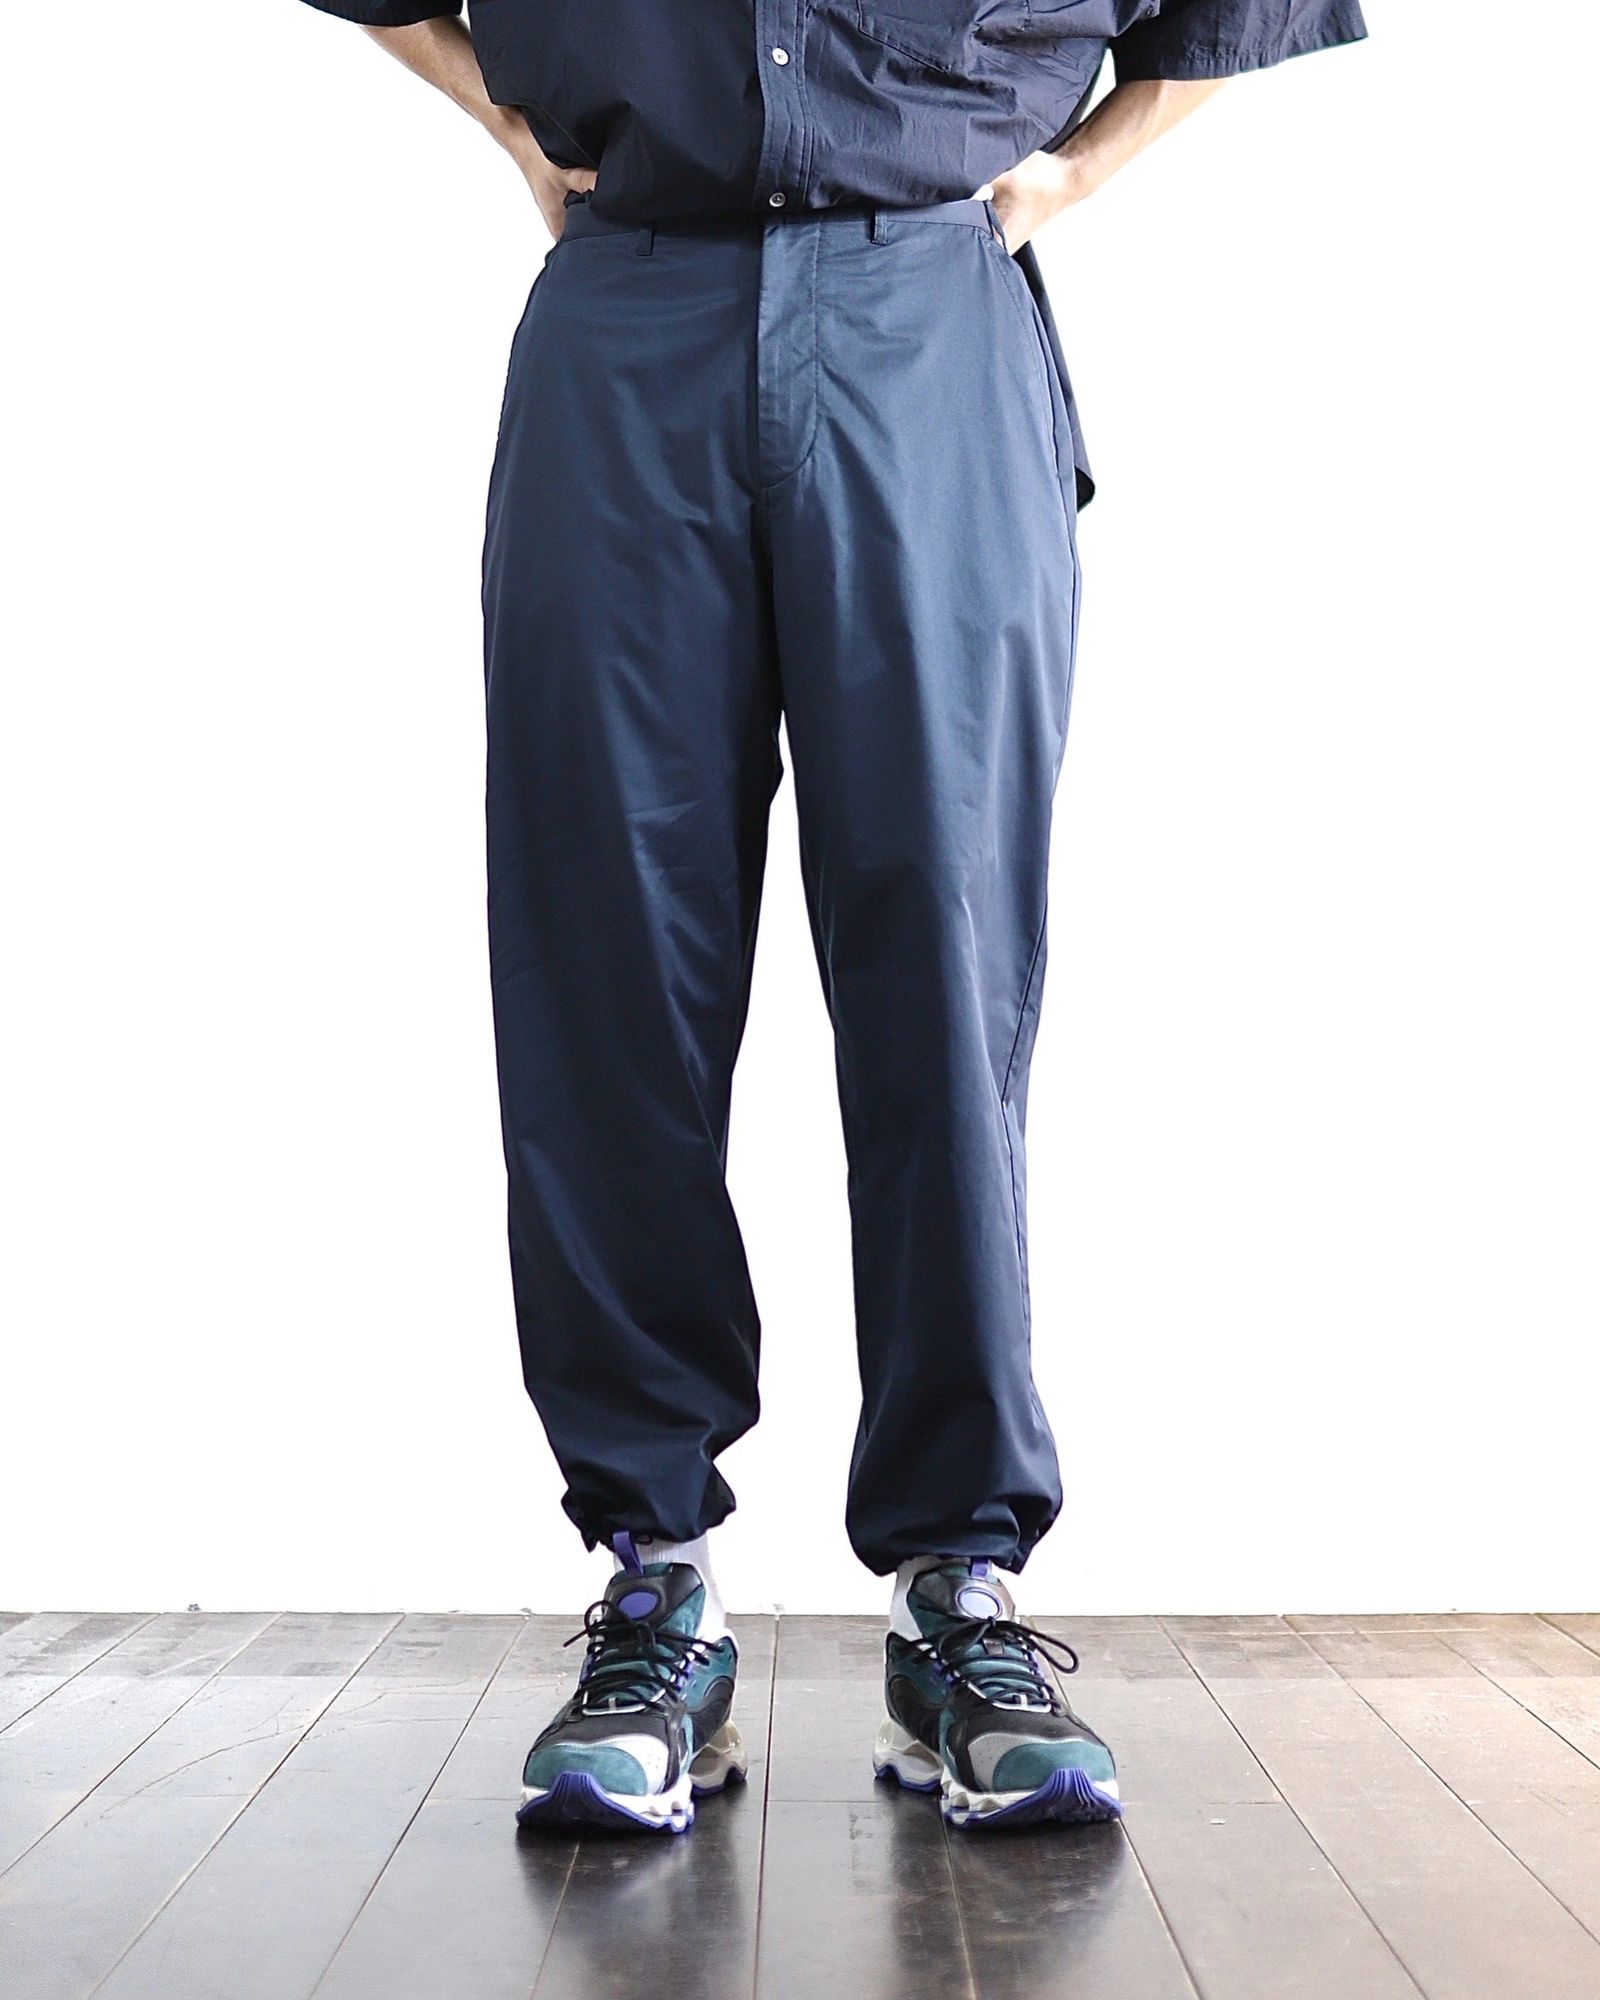 8,610円FreshService STRETCH DRY CLOTH PANTS